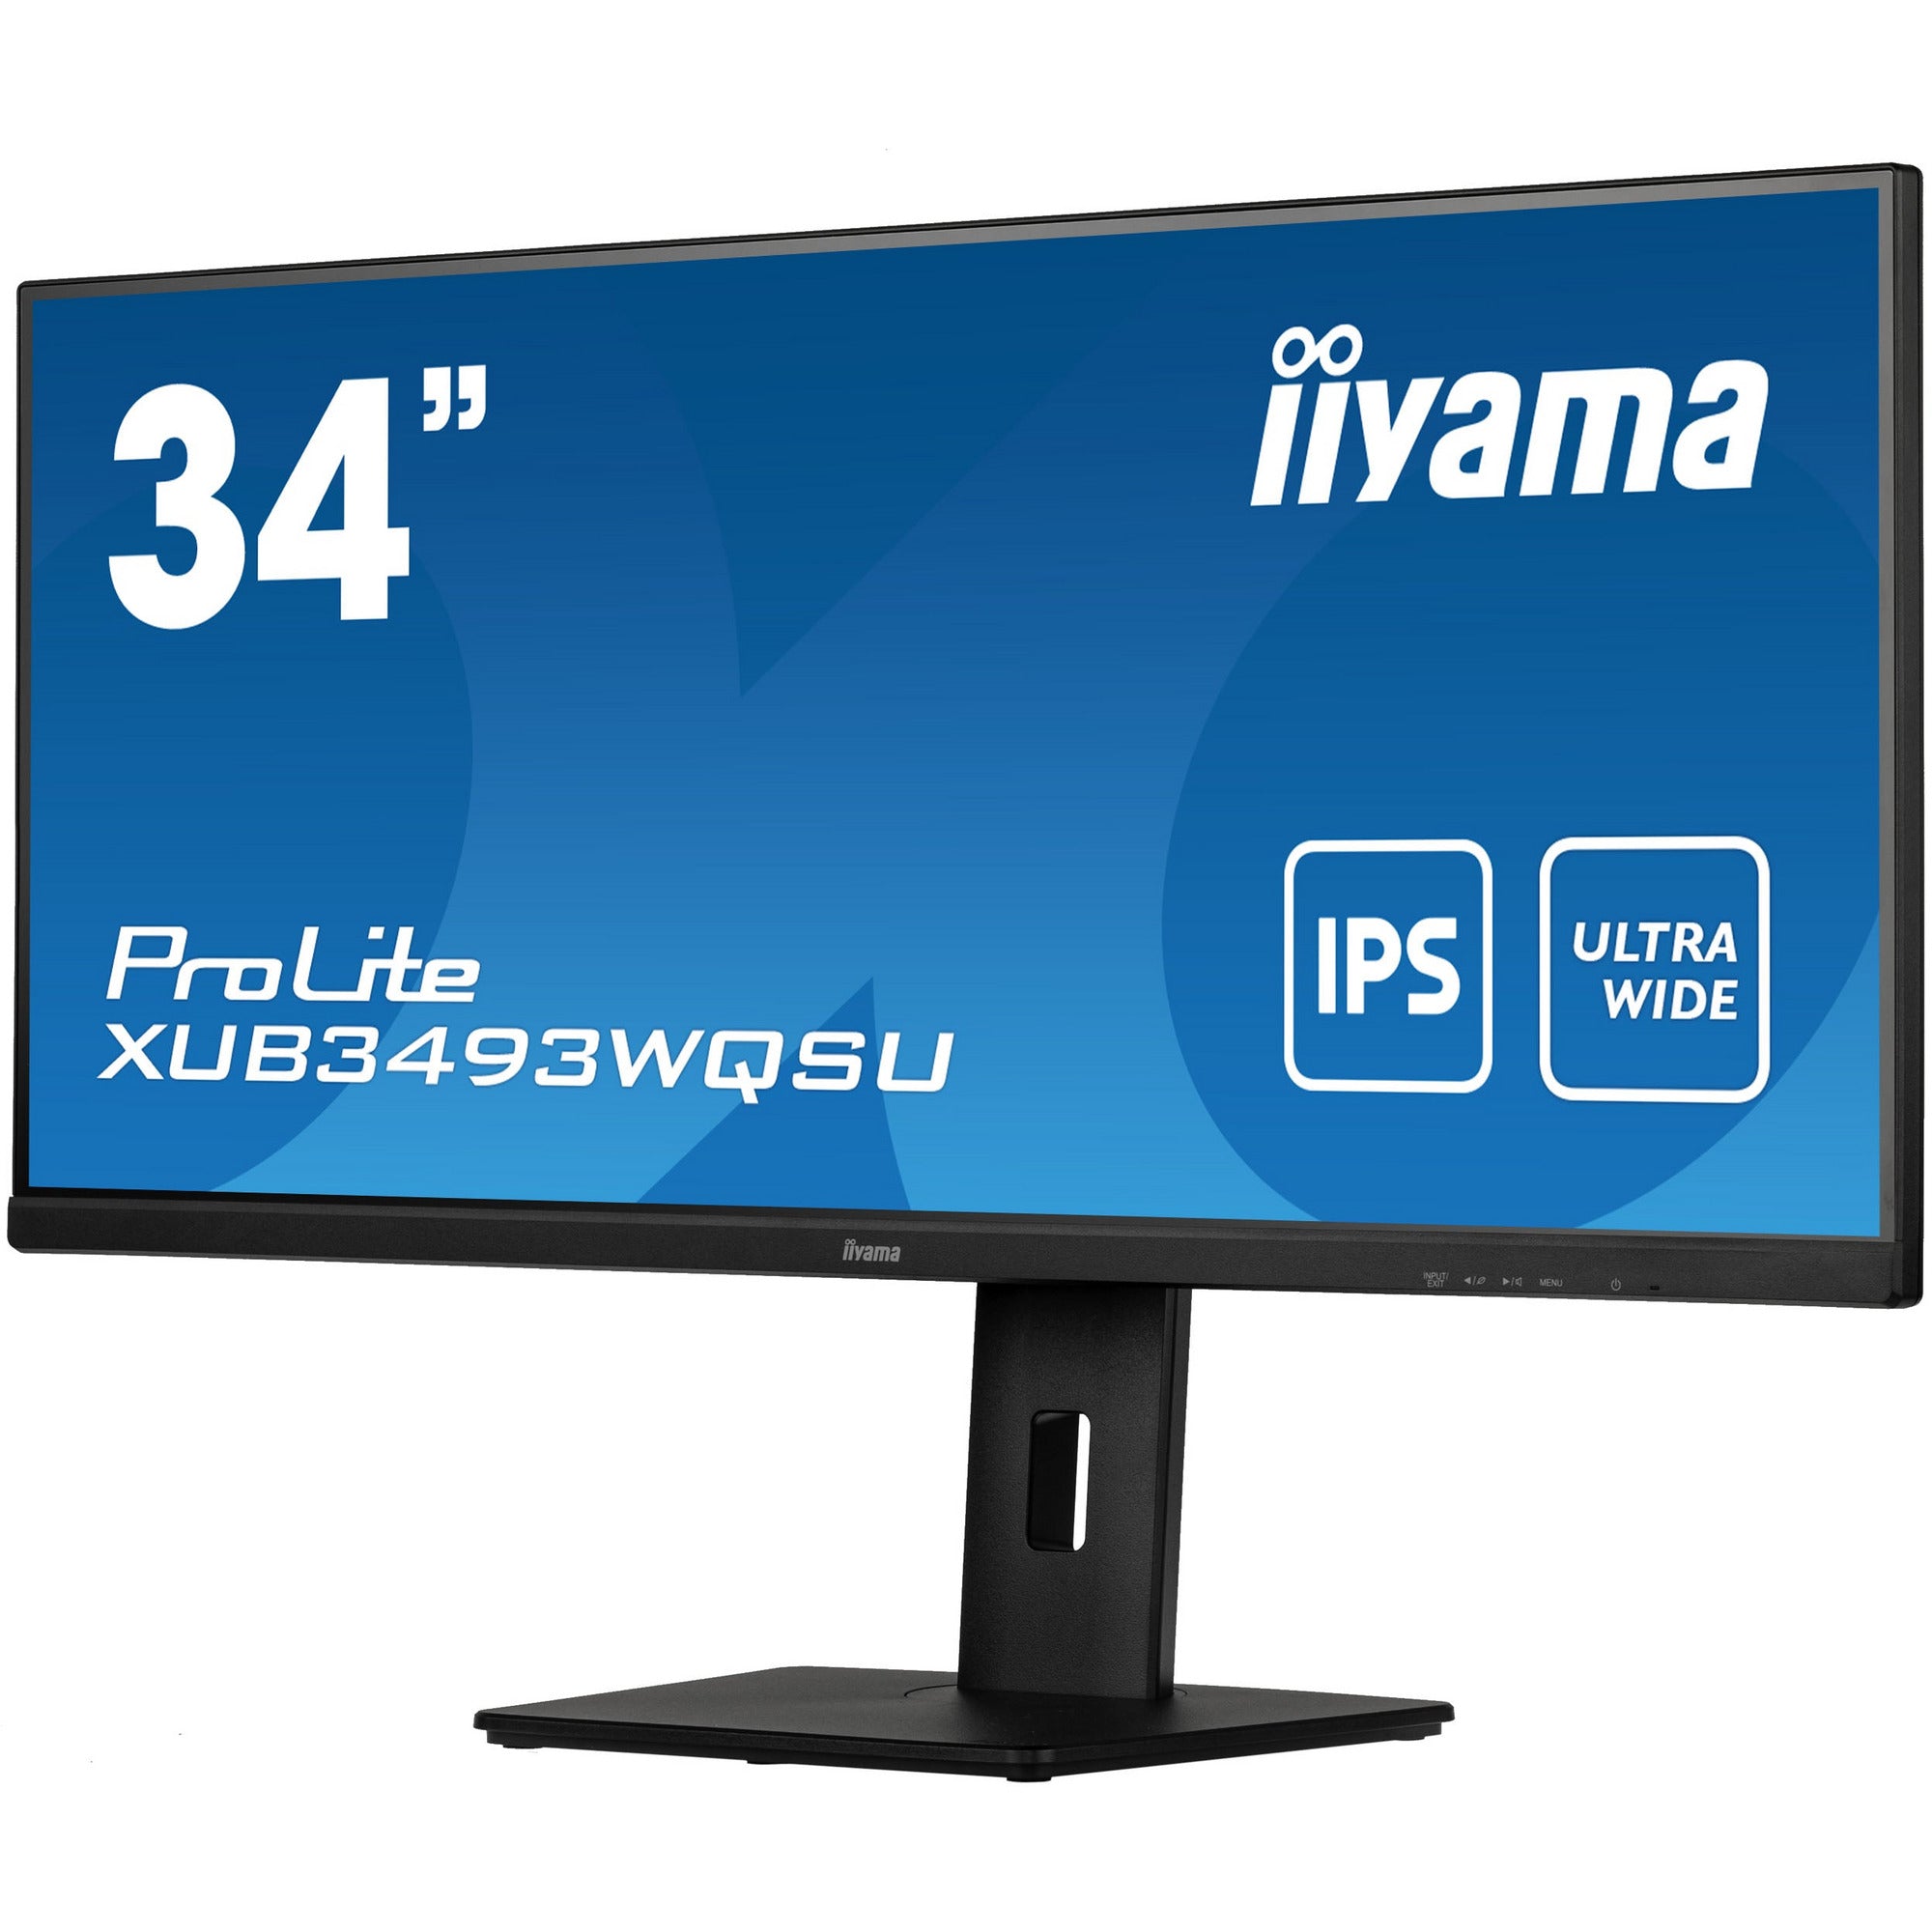 iiyama ProLite XUB3493WQSU-B5 34" IPS Ultra-Wide Display